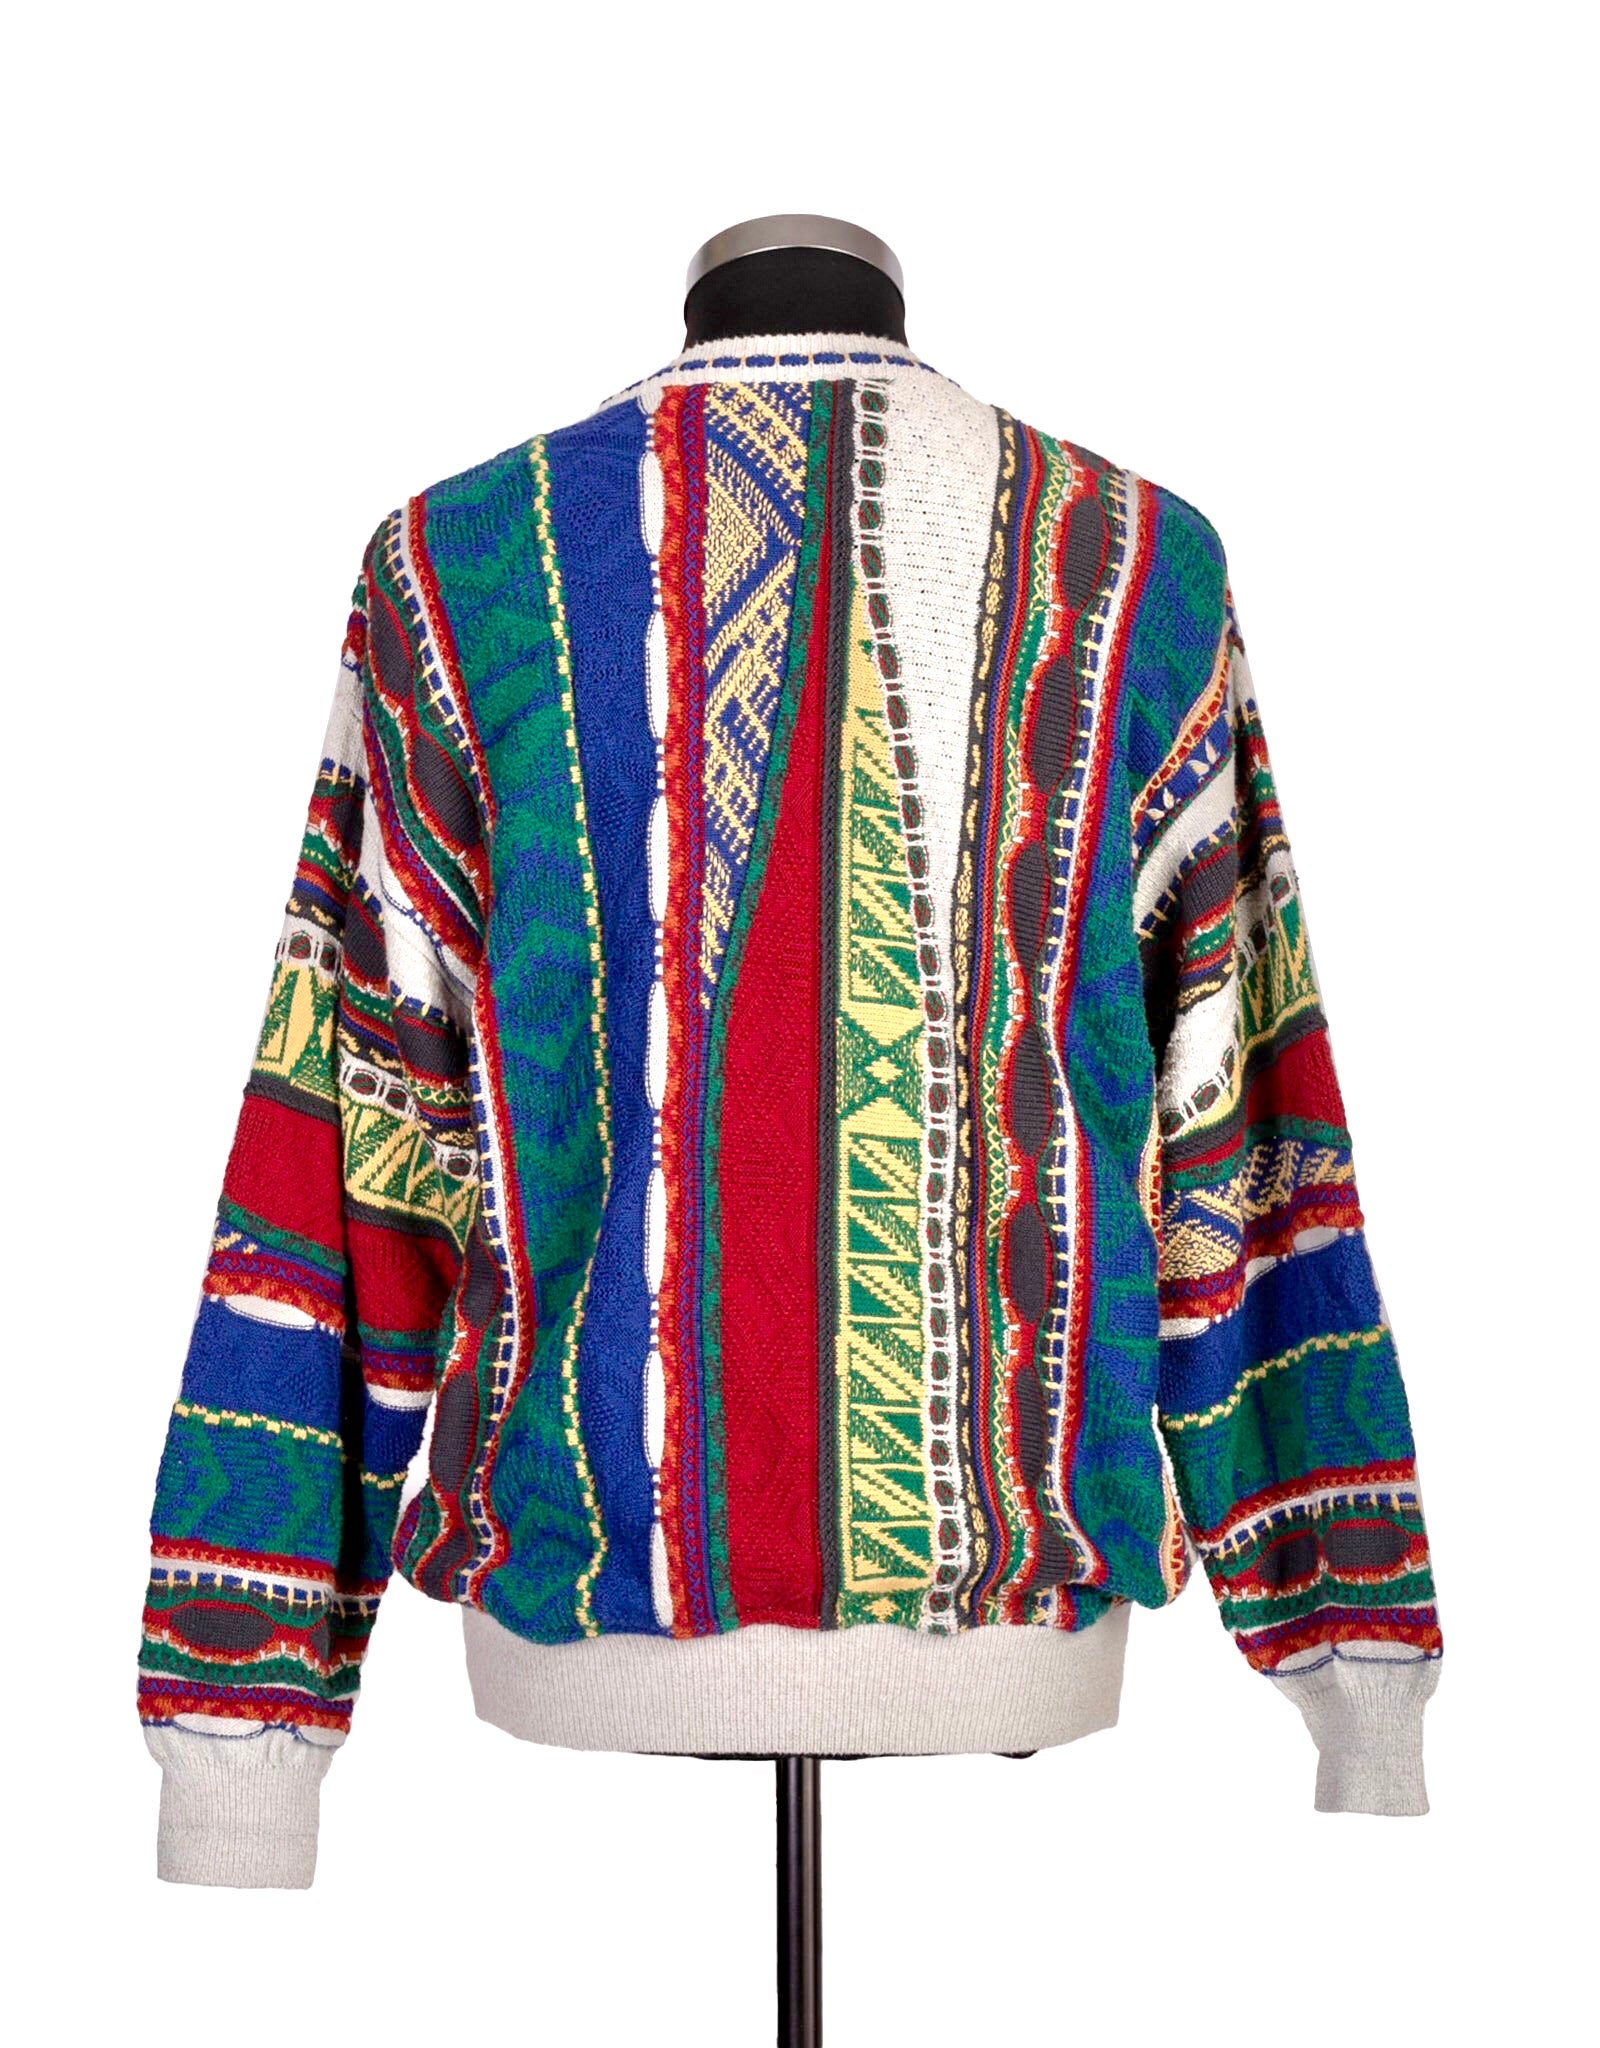 Cesare 90's Cosby Style Multicolor Cotton Sweater, Men's L